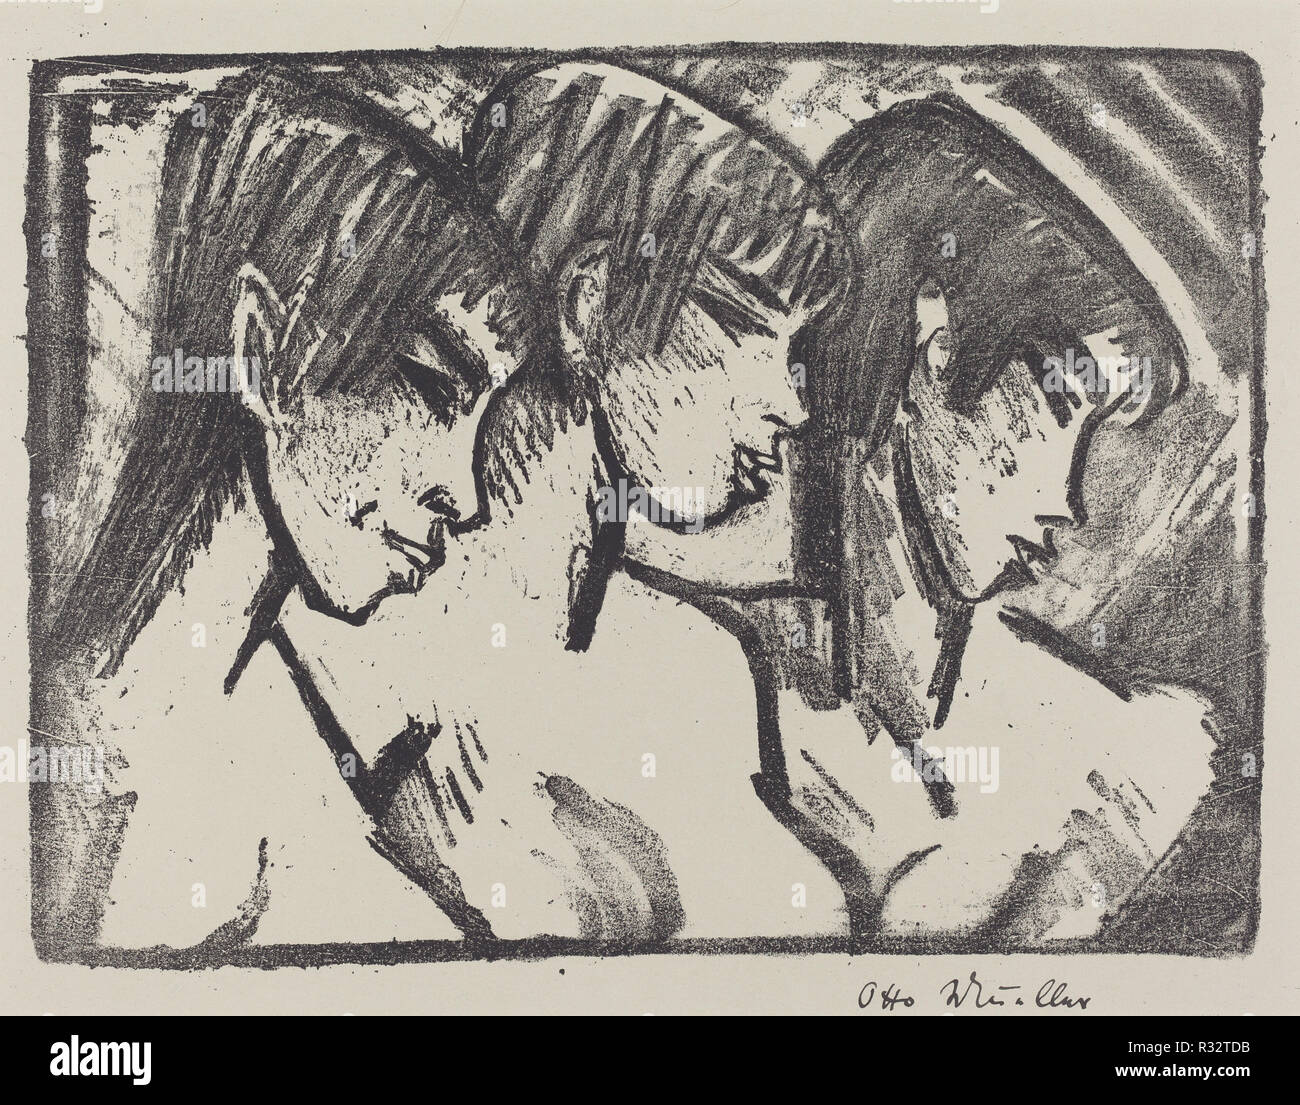 Trois jeunes filles dans Profil (Drei Madchen im profil). En date du : 1921. Technique : lithographie. Musée : National Gallery of Art, Washington DC. Auteur : Otto Müller. Banque D'Images